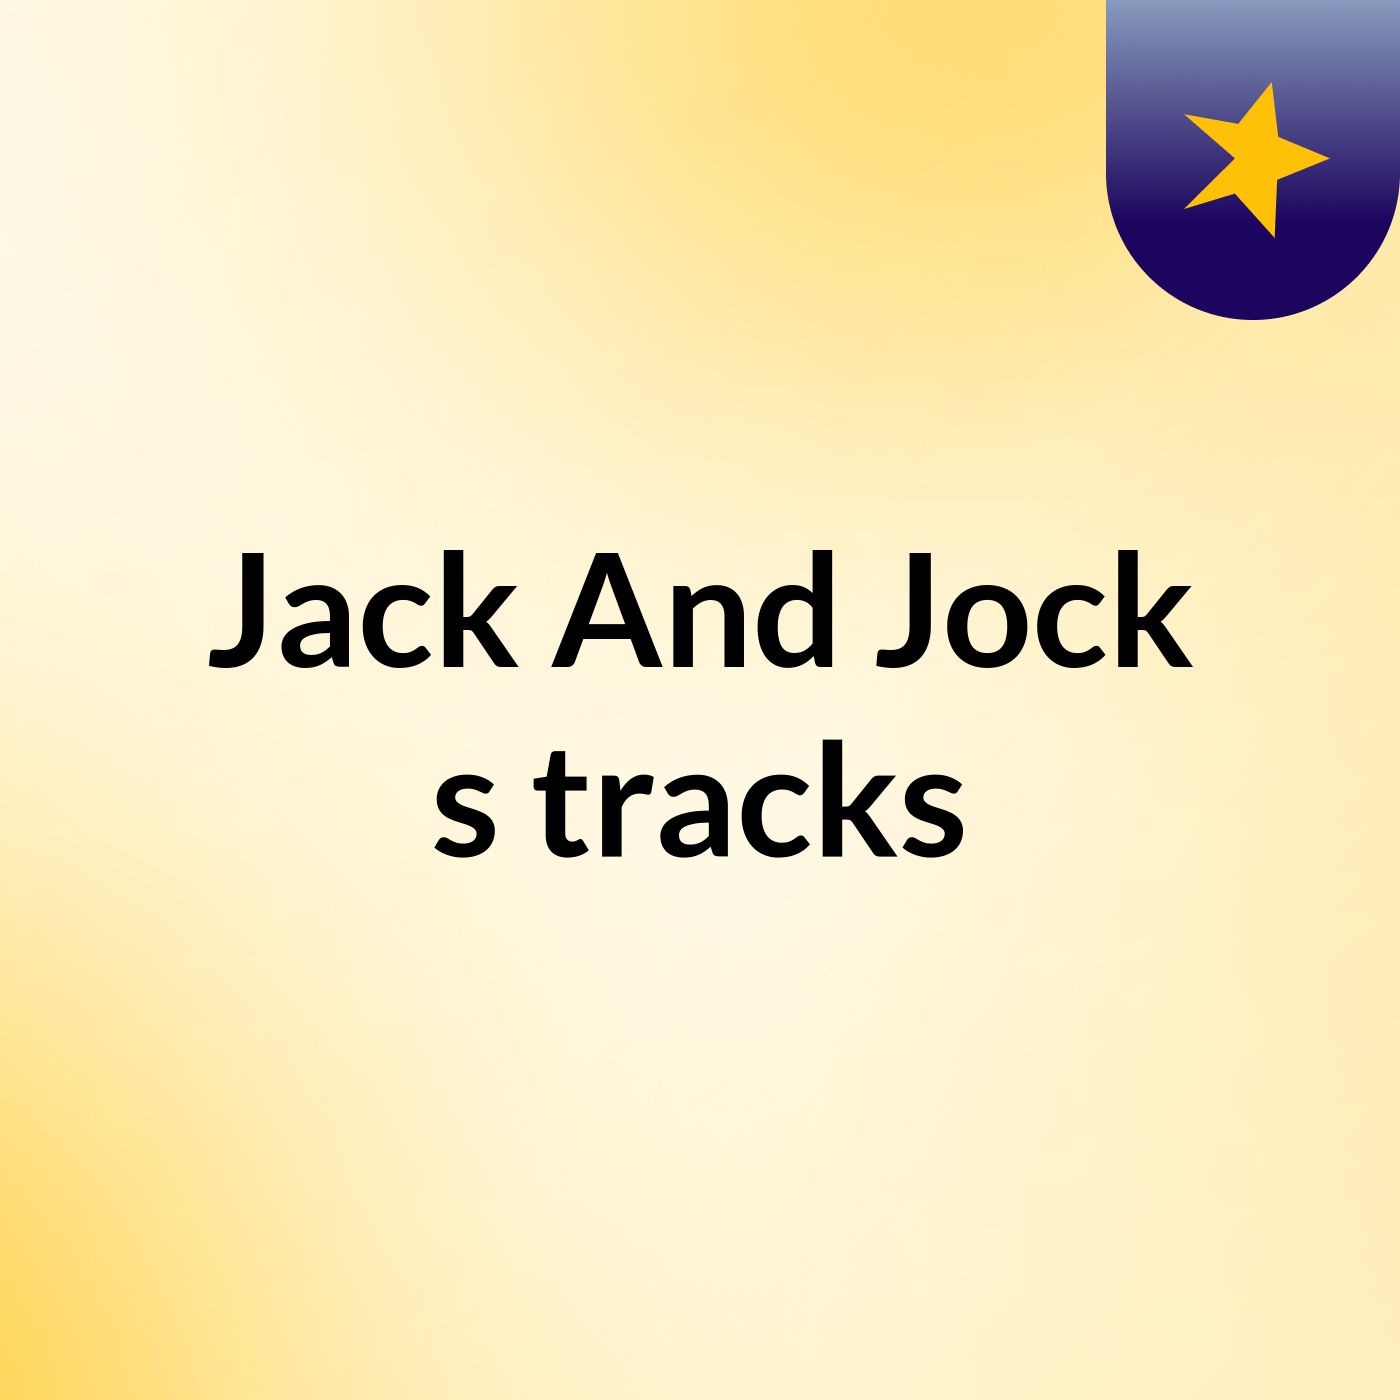 Jack And Jock's tracks